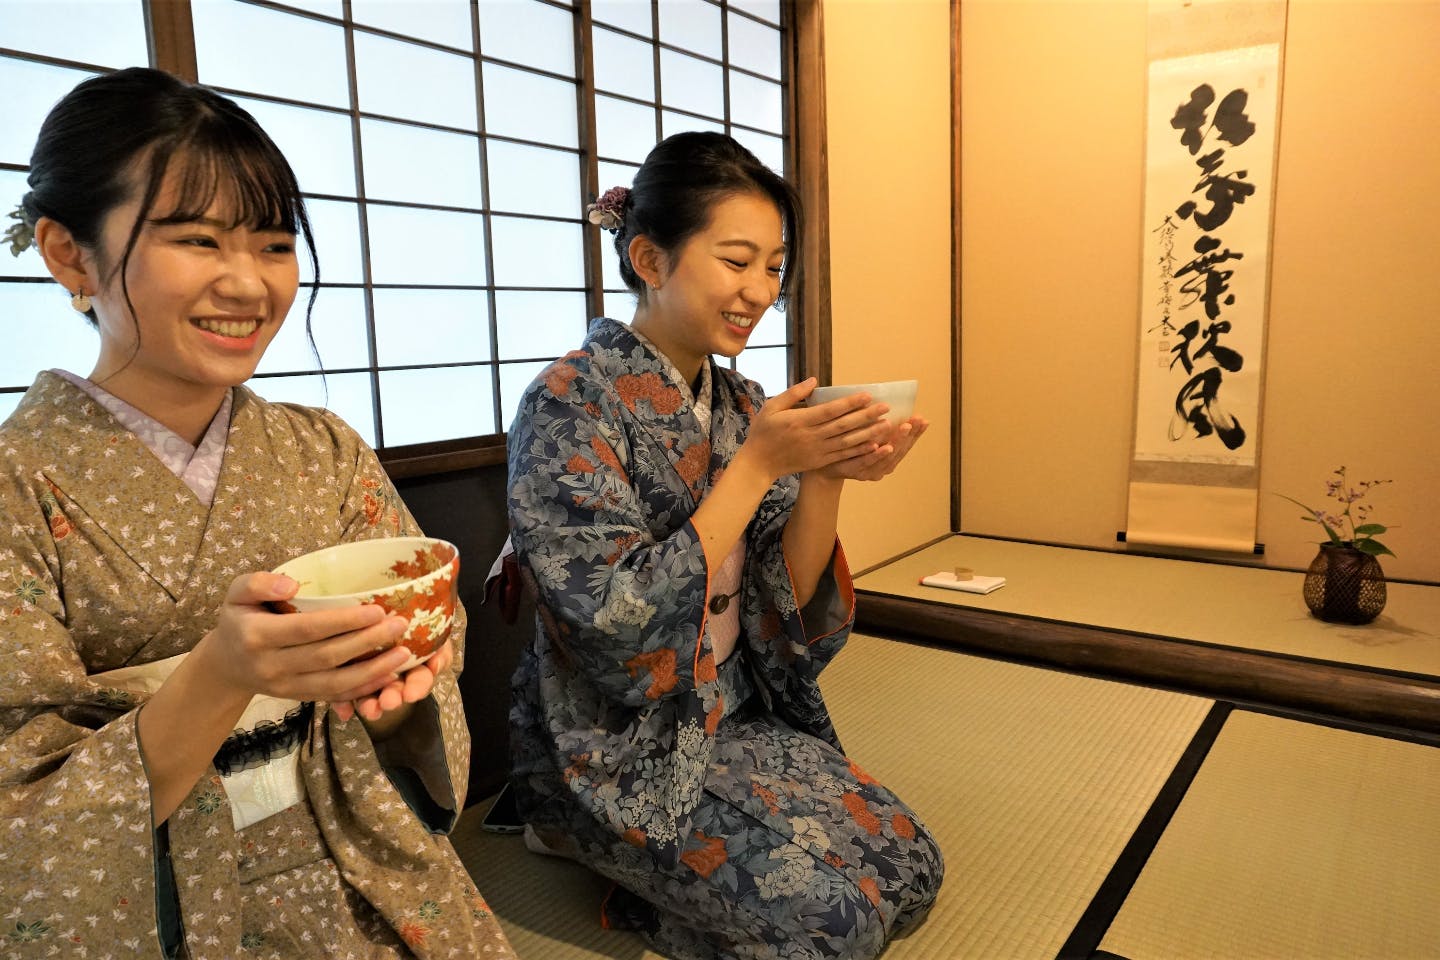 【東京・浅草・茶道体験】浅草で日本の美を堪能。本格的なお茶室で気軽に茶道体験